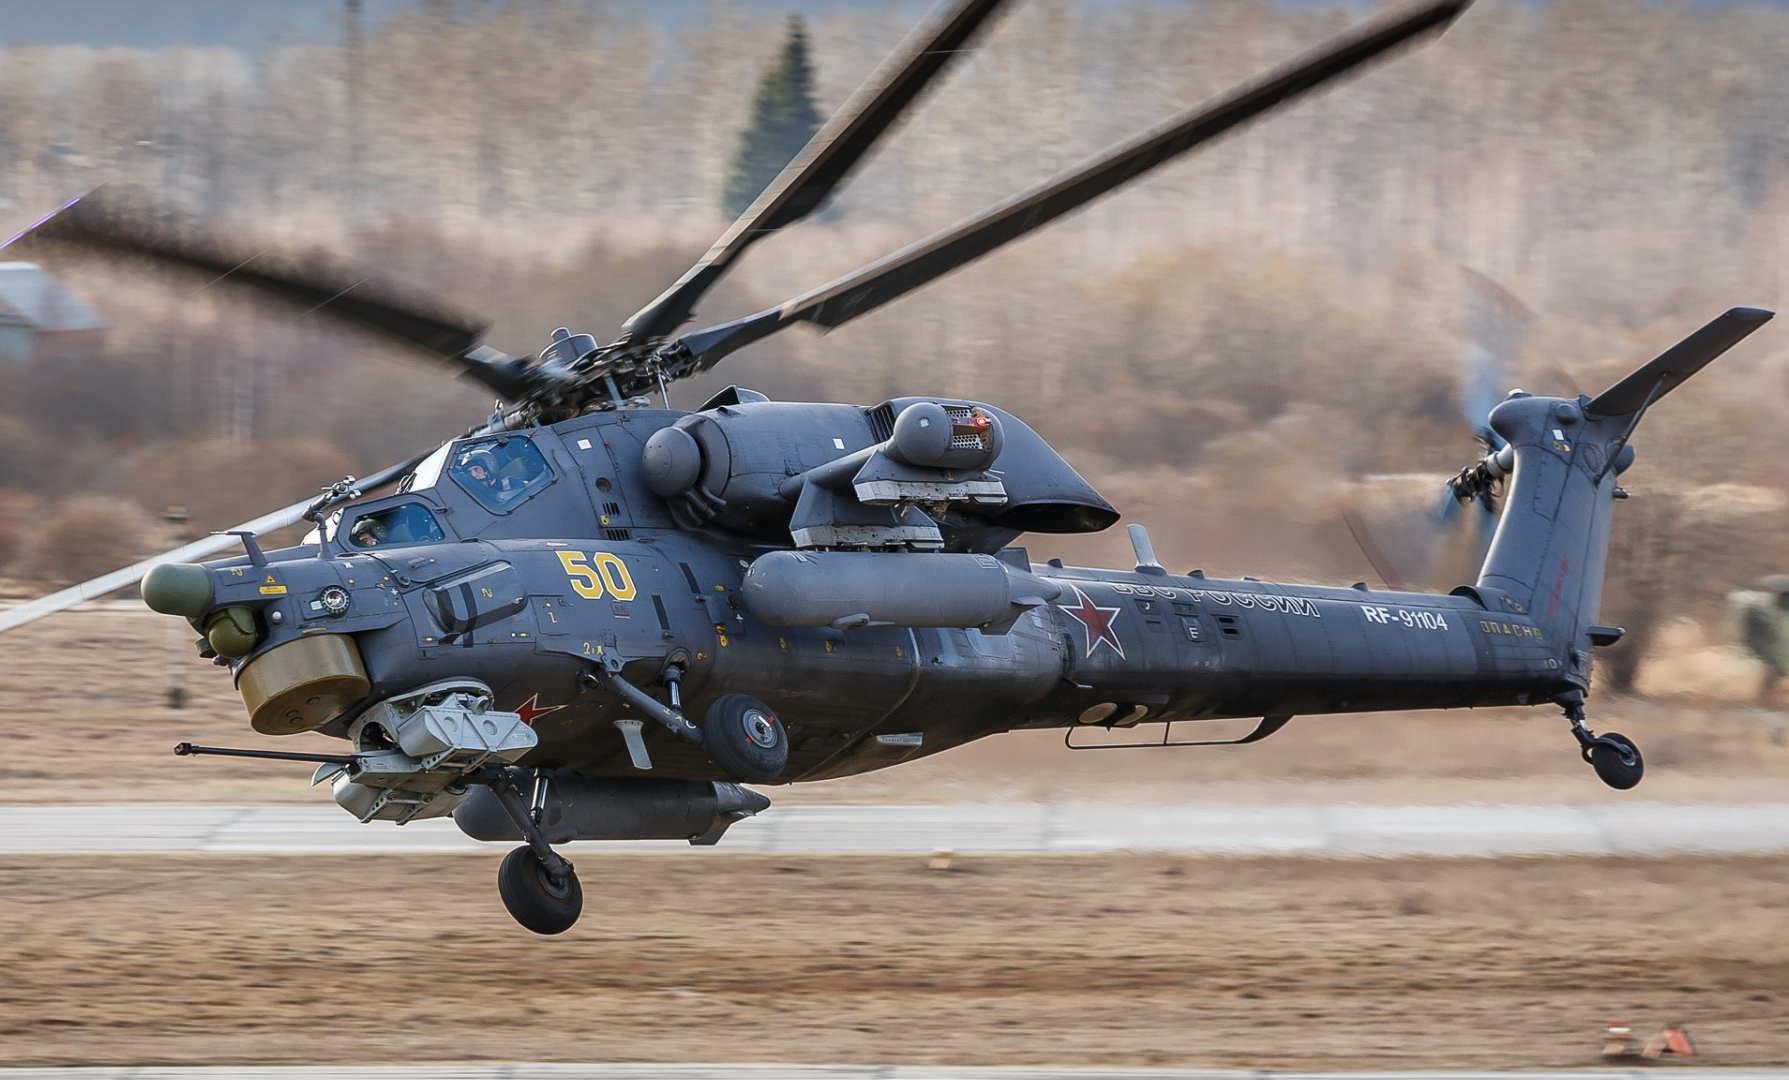 Mi-28 Night Hunter (Thợ săn đêm) là dòng trực thăng tấn công thế hệ mới nhất của Nga, được thiết kế để thực hiện nhiệm vụ tìm, diệt các mục tiêu như xe tăng, thiết giáp, mục tiêu kiên cố, mục tiêu trên không chi viện hỏa lực cho lục quân trong mọi điều kiện thời tiết, cả ngày lẫn đêm.